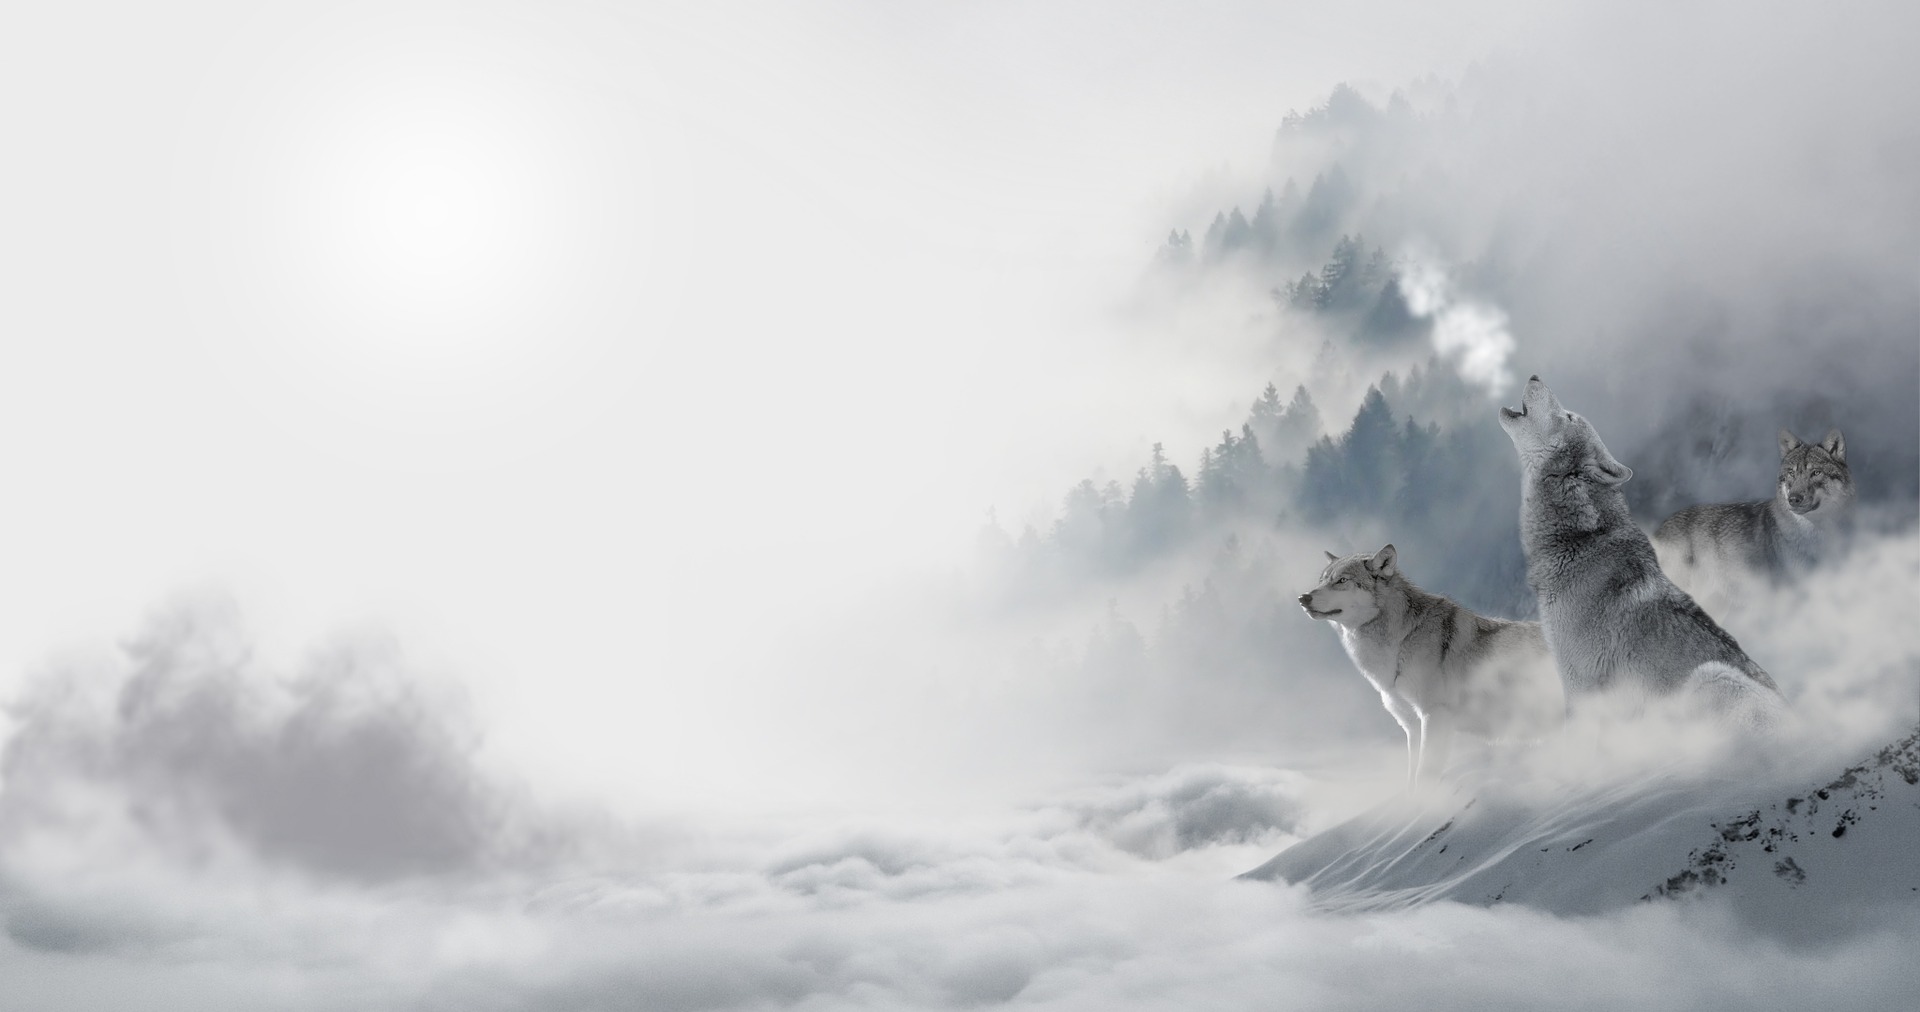 ワンナイト人狼の基本ルールと役職解説 元人狼廃人の人狼解説wikiっぽいブログ